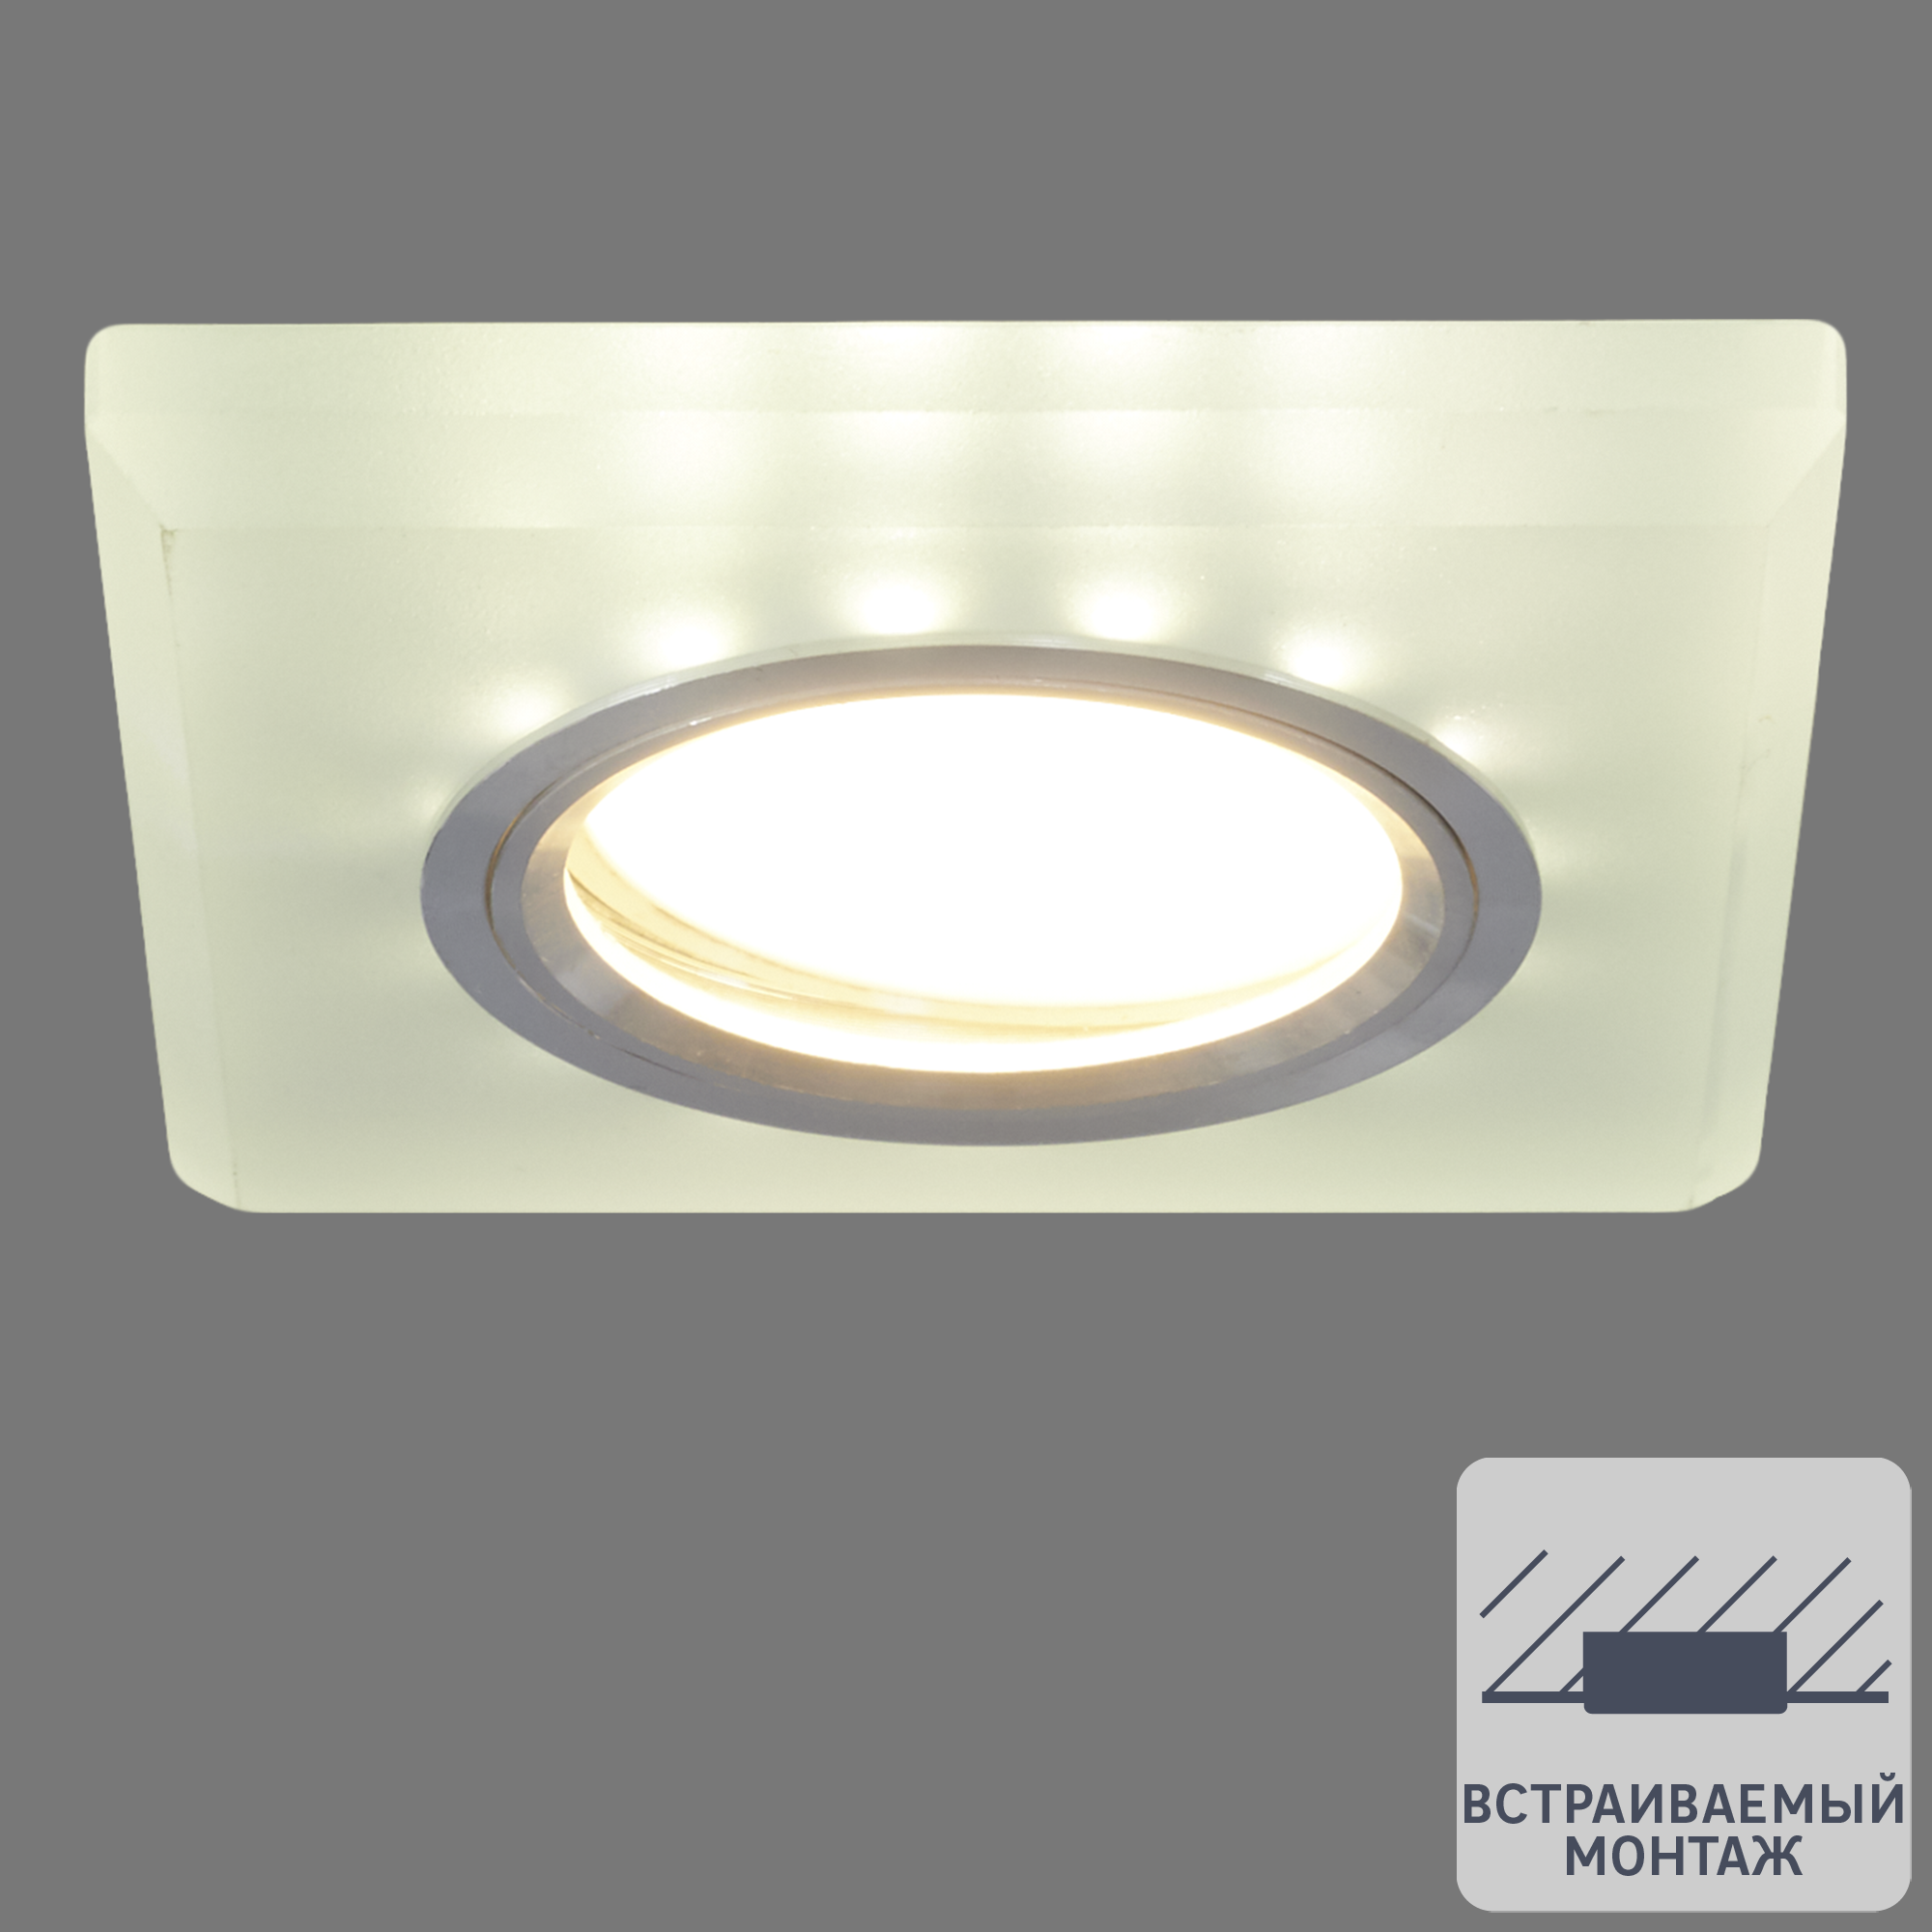 82411458 Светильник точечный встраиваемый Bohemia с LED-подсветкой под отверстие 60 мм 2 м² цвет белый STLM-0027000 ITALMAC